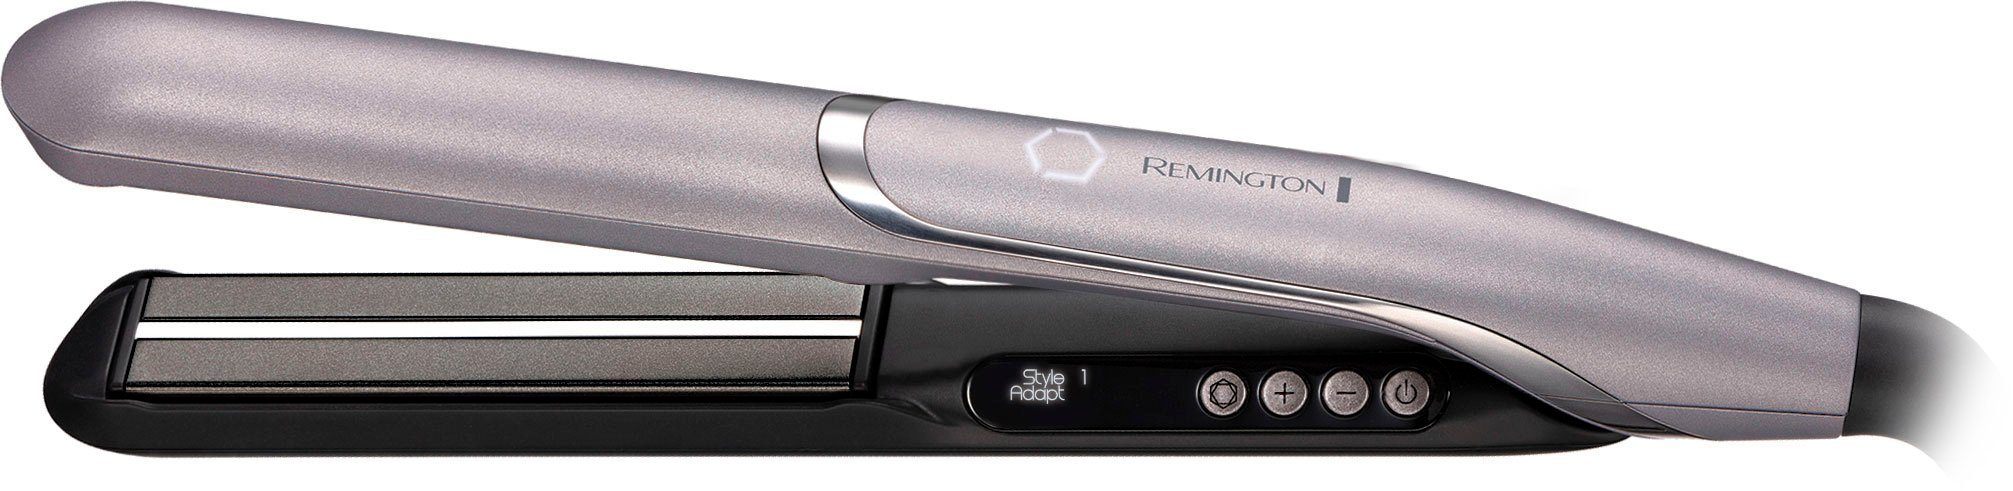 Remington Glätteisen PROluxe You™ S9880 Keramik-Beschichtung, lernfähiger  Haarglätter, Memory Funktion, 2 StyleAdapt™ Nutzerprofile, StyleAdapt™  Technologie lernt, personalisiert und passt die Hitze an